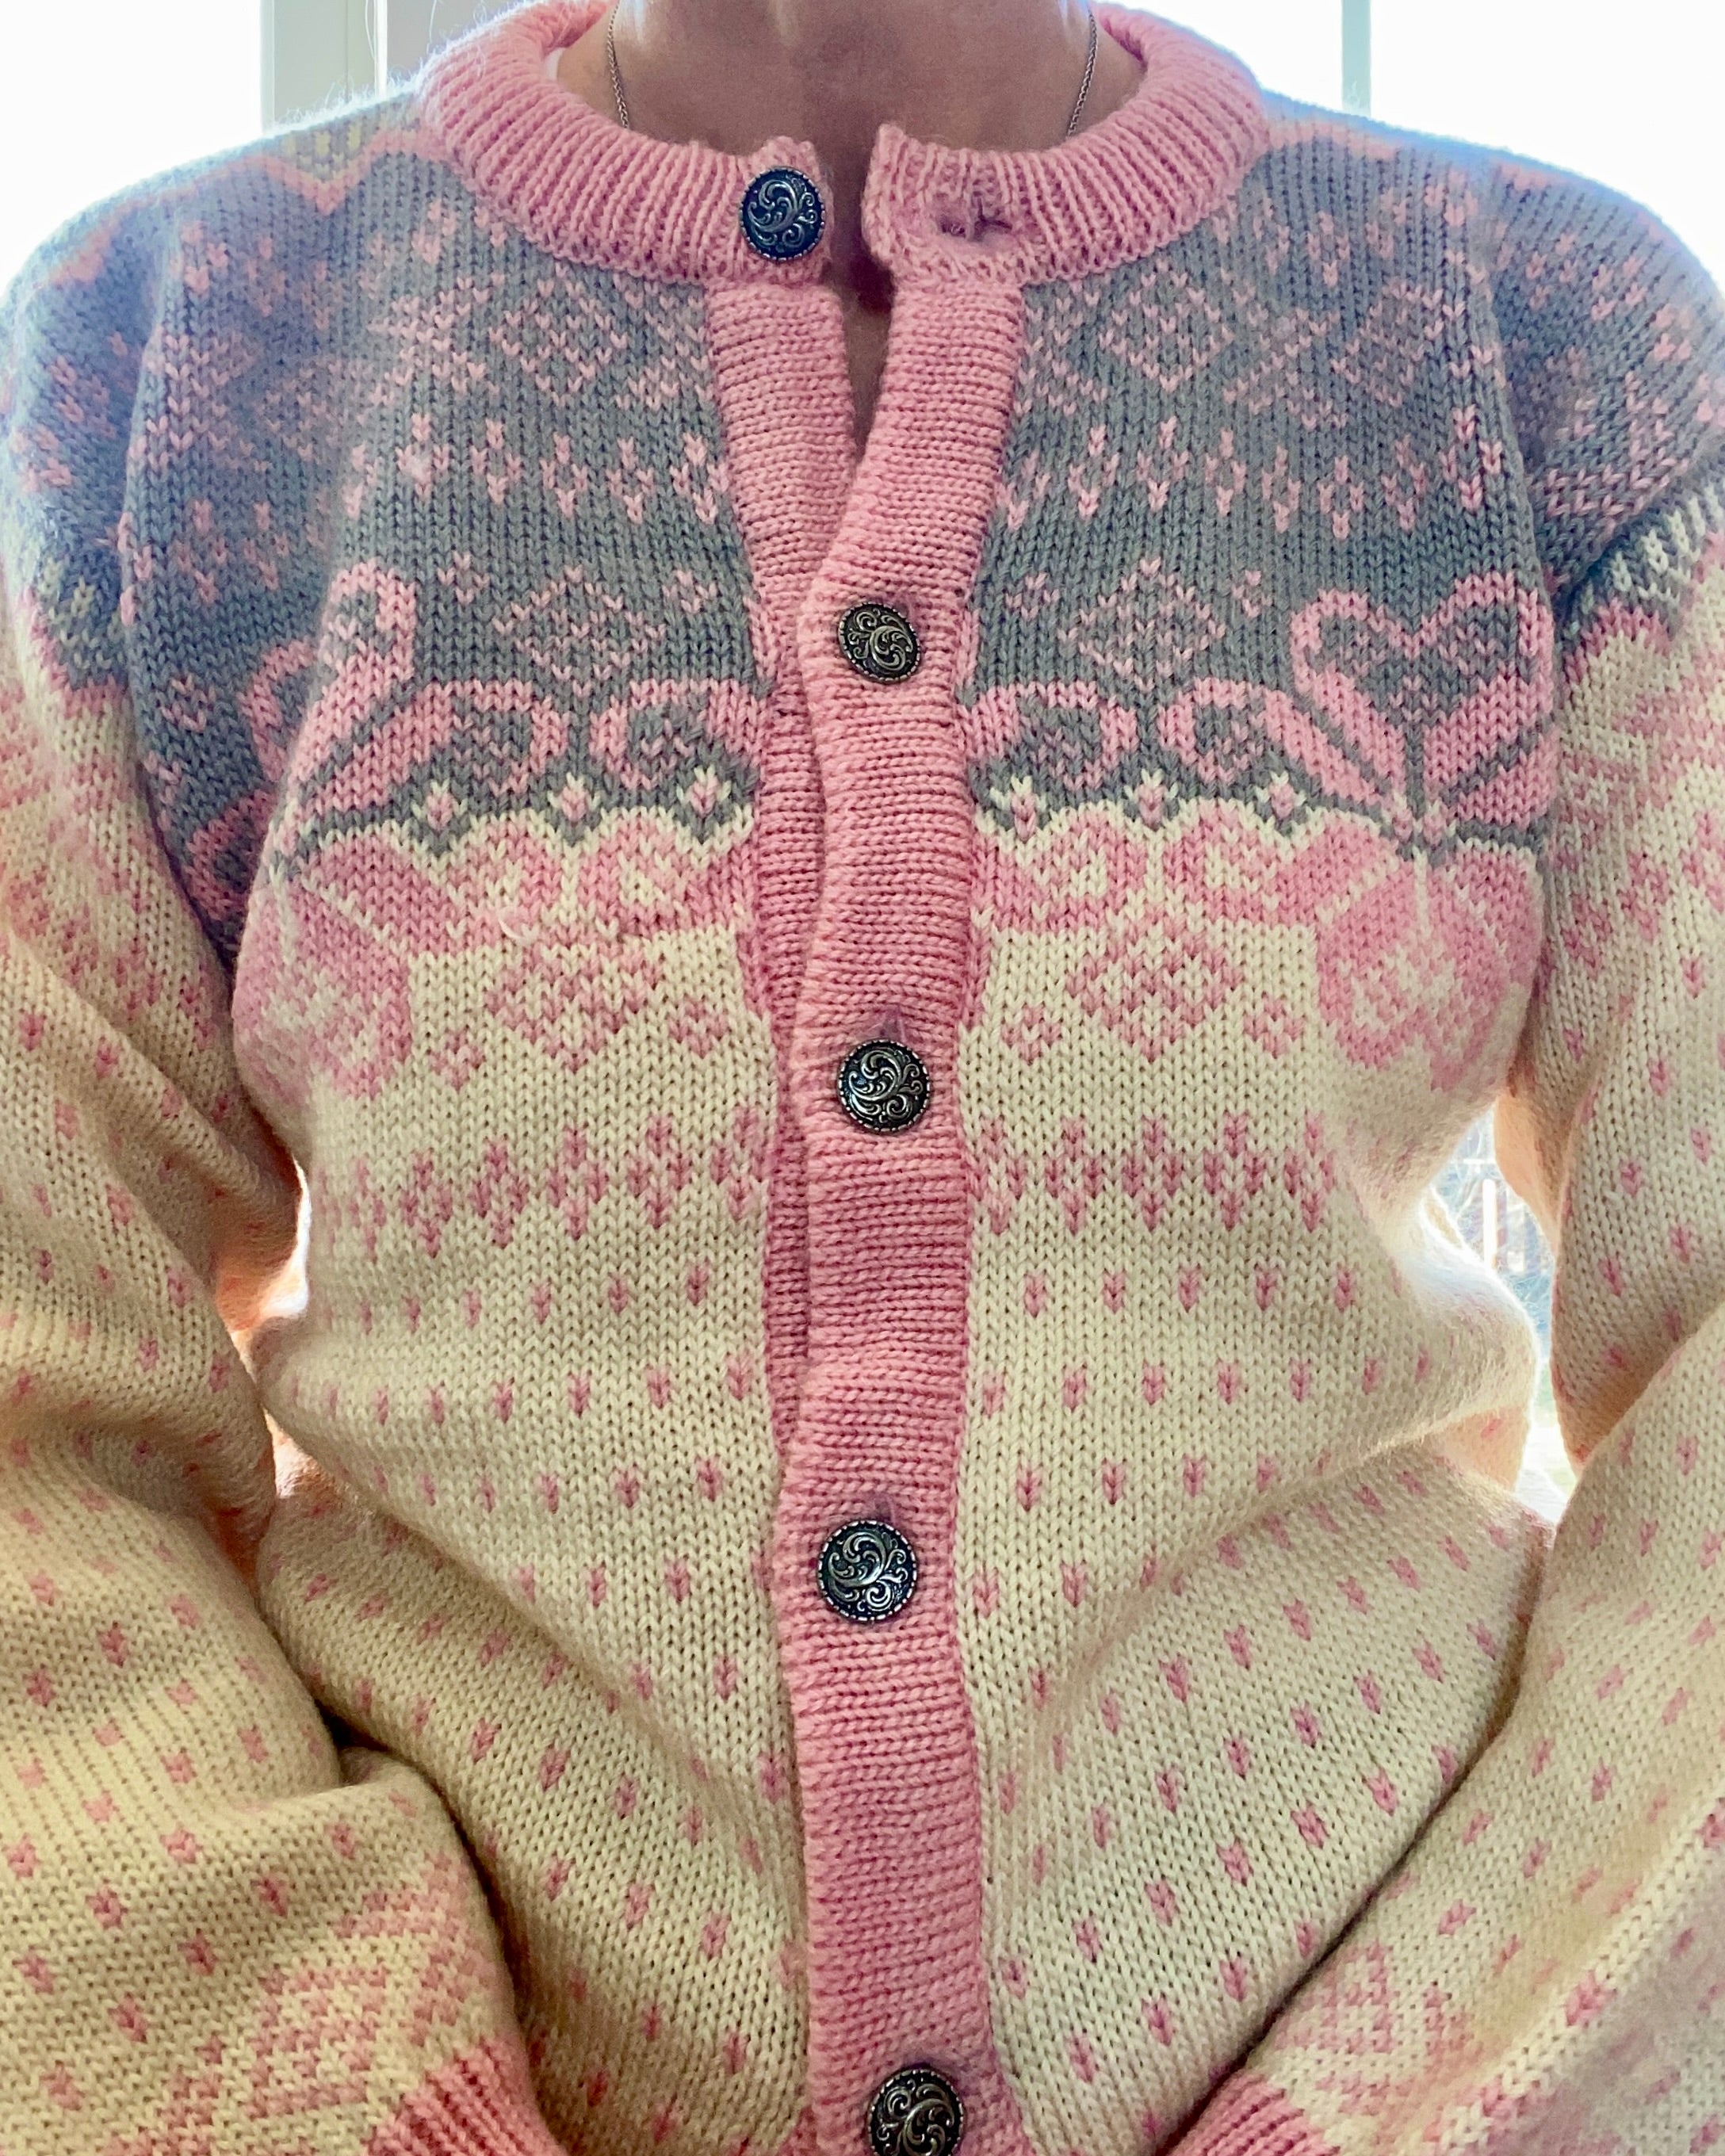 Vintage DALE of Norway Norwegian Fair Isle Cardigan Sweater M